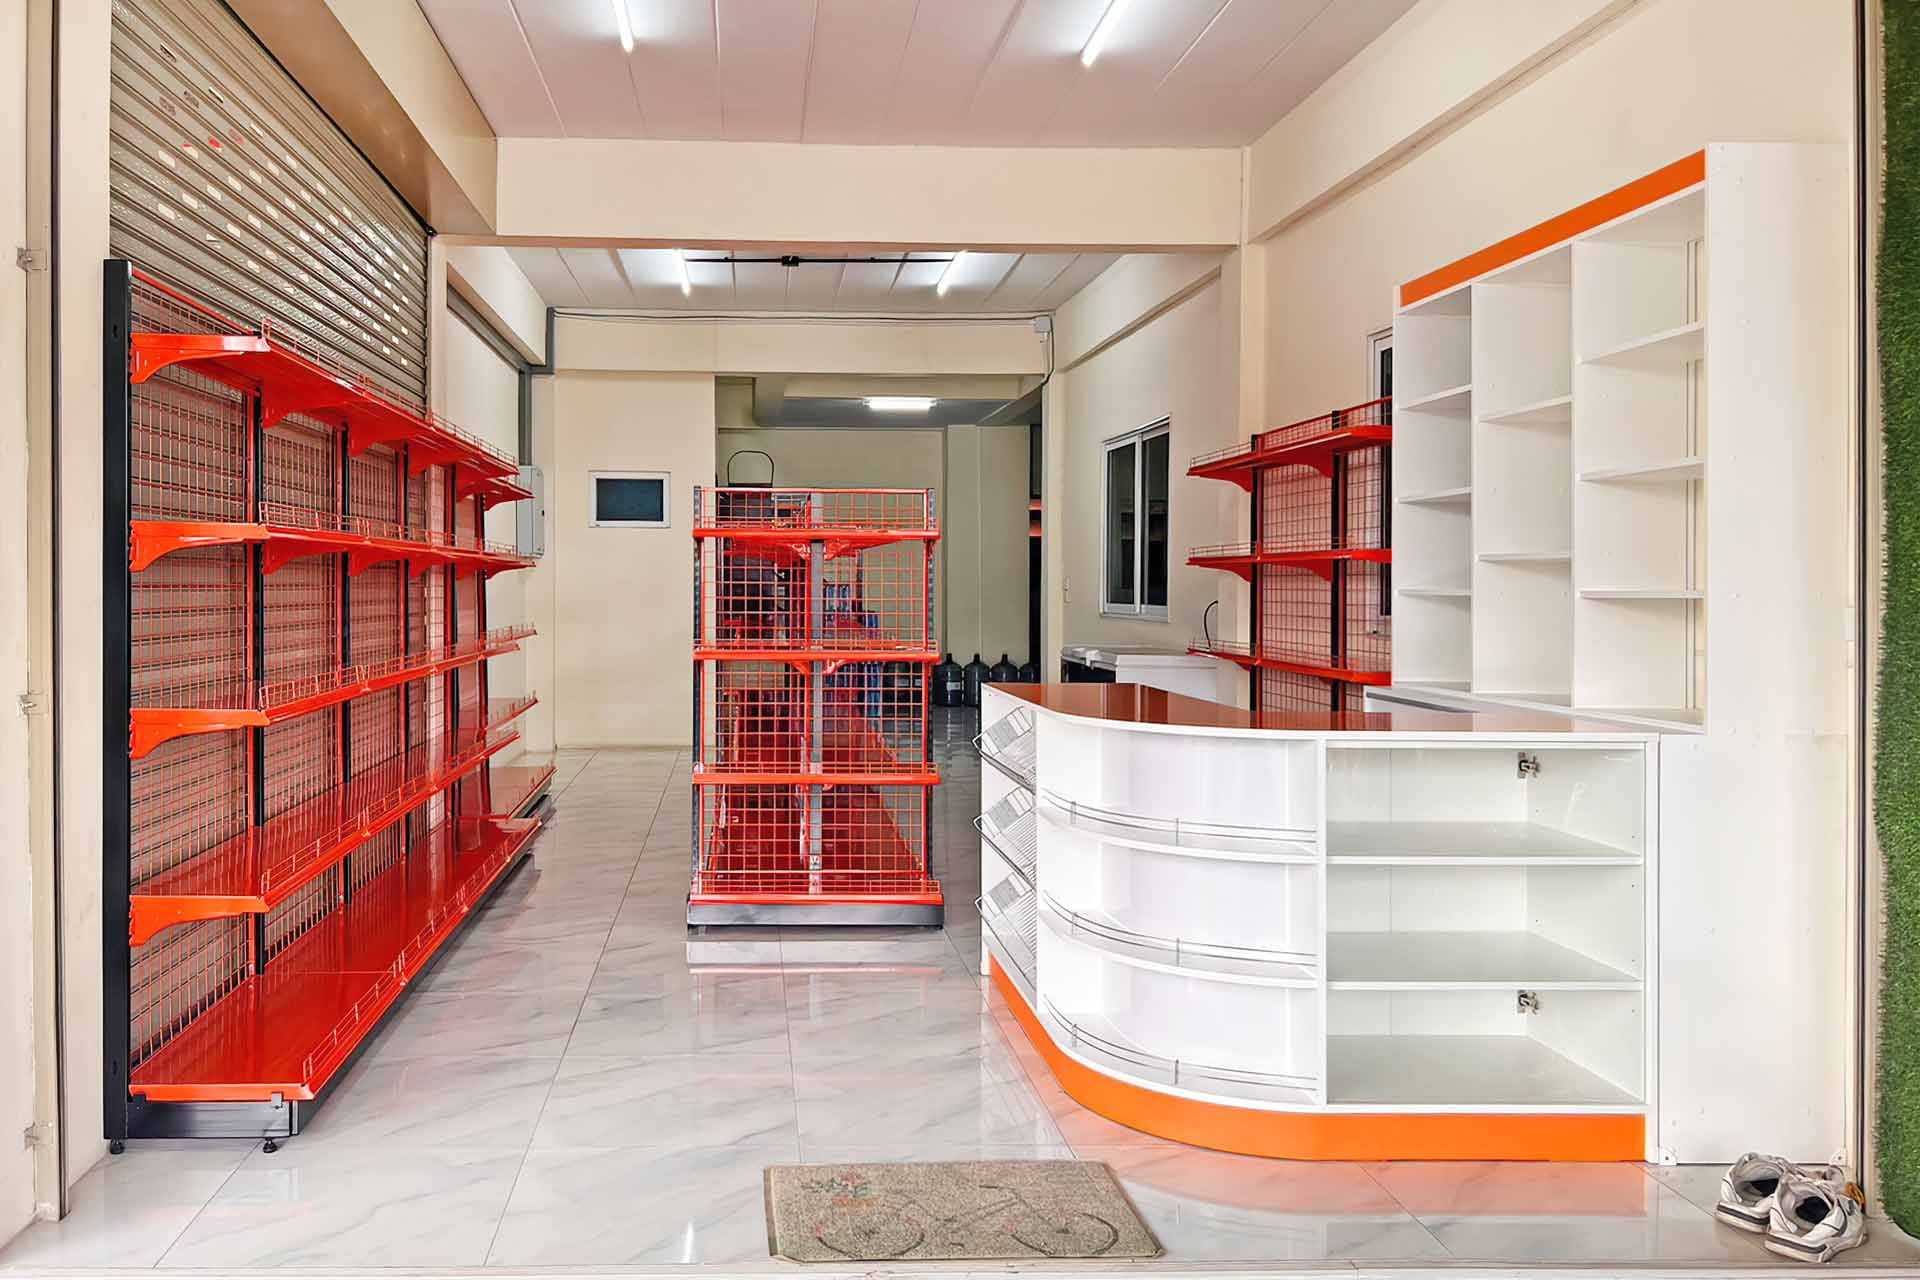 เซตชั้นวางสินค้าและเคาน์เตอร์คิดเงินสั่งผลิต สีส้ม-ดำ ในตึก 1 คูหาร้านคุณธีรพงษ์ มาบยางพร